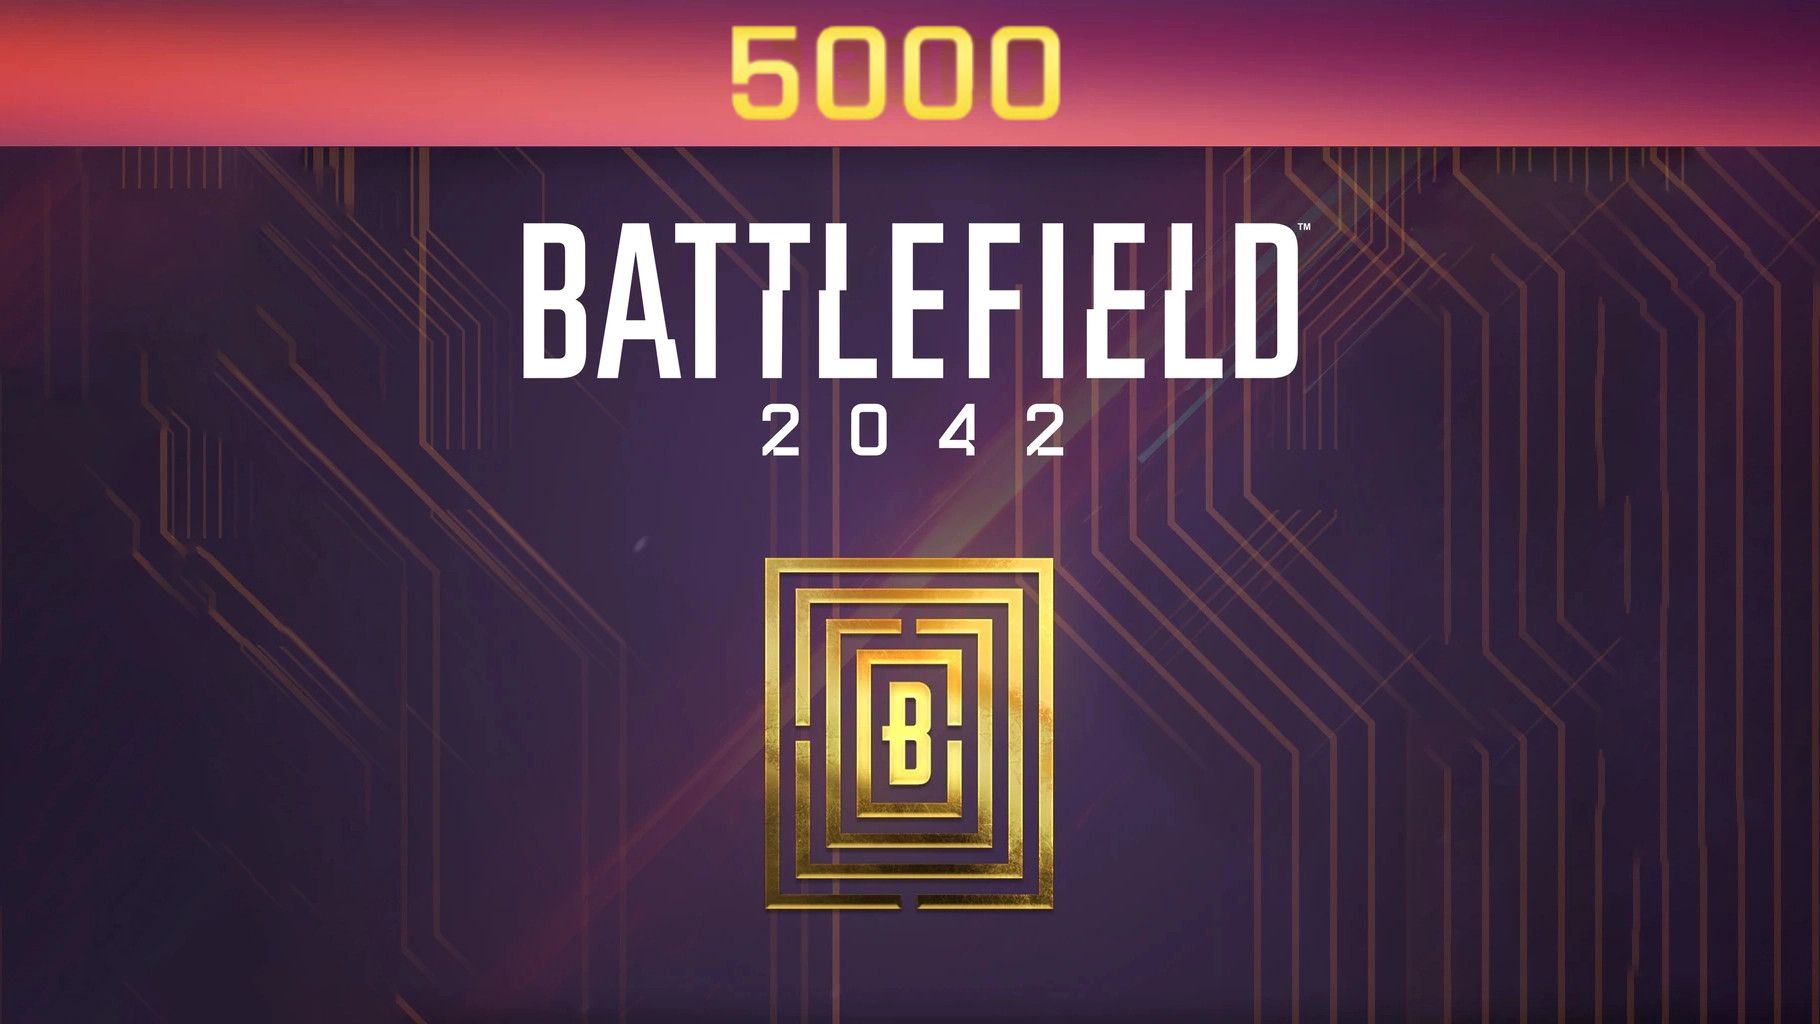 Battlefield 2042 - 5000 BFC Balance XBOX One / Xbox Series X|S CD Key, 40.67$